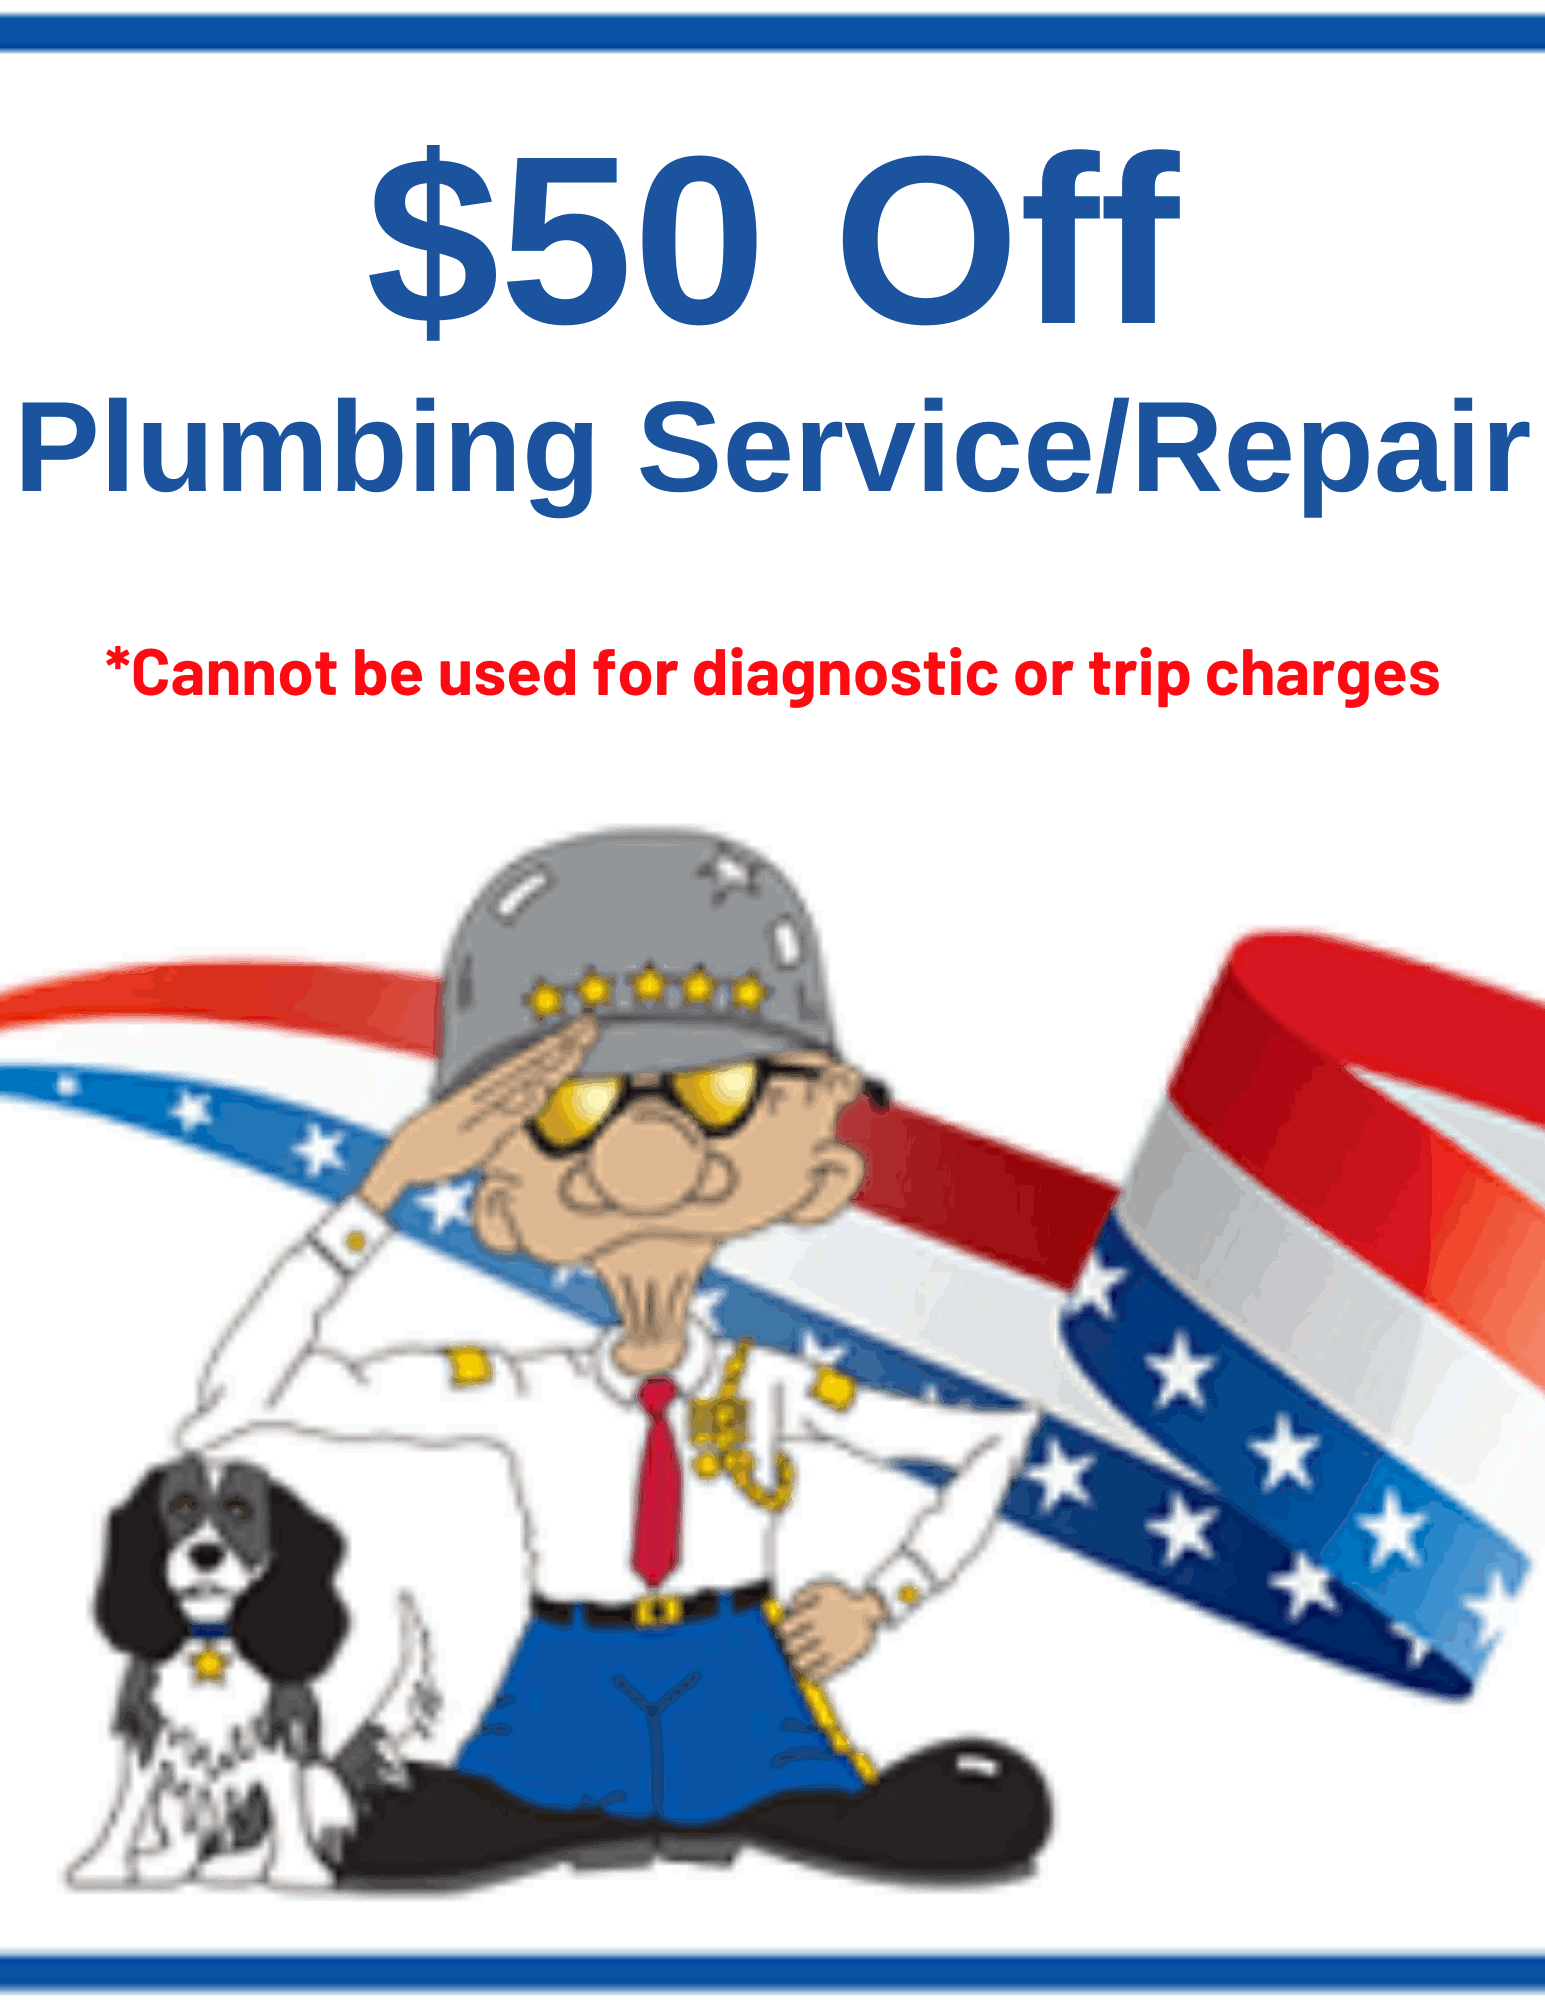 plumbing service repair coupon General Air Conditioning & Plumbing